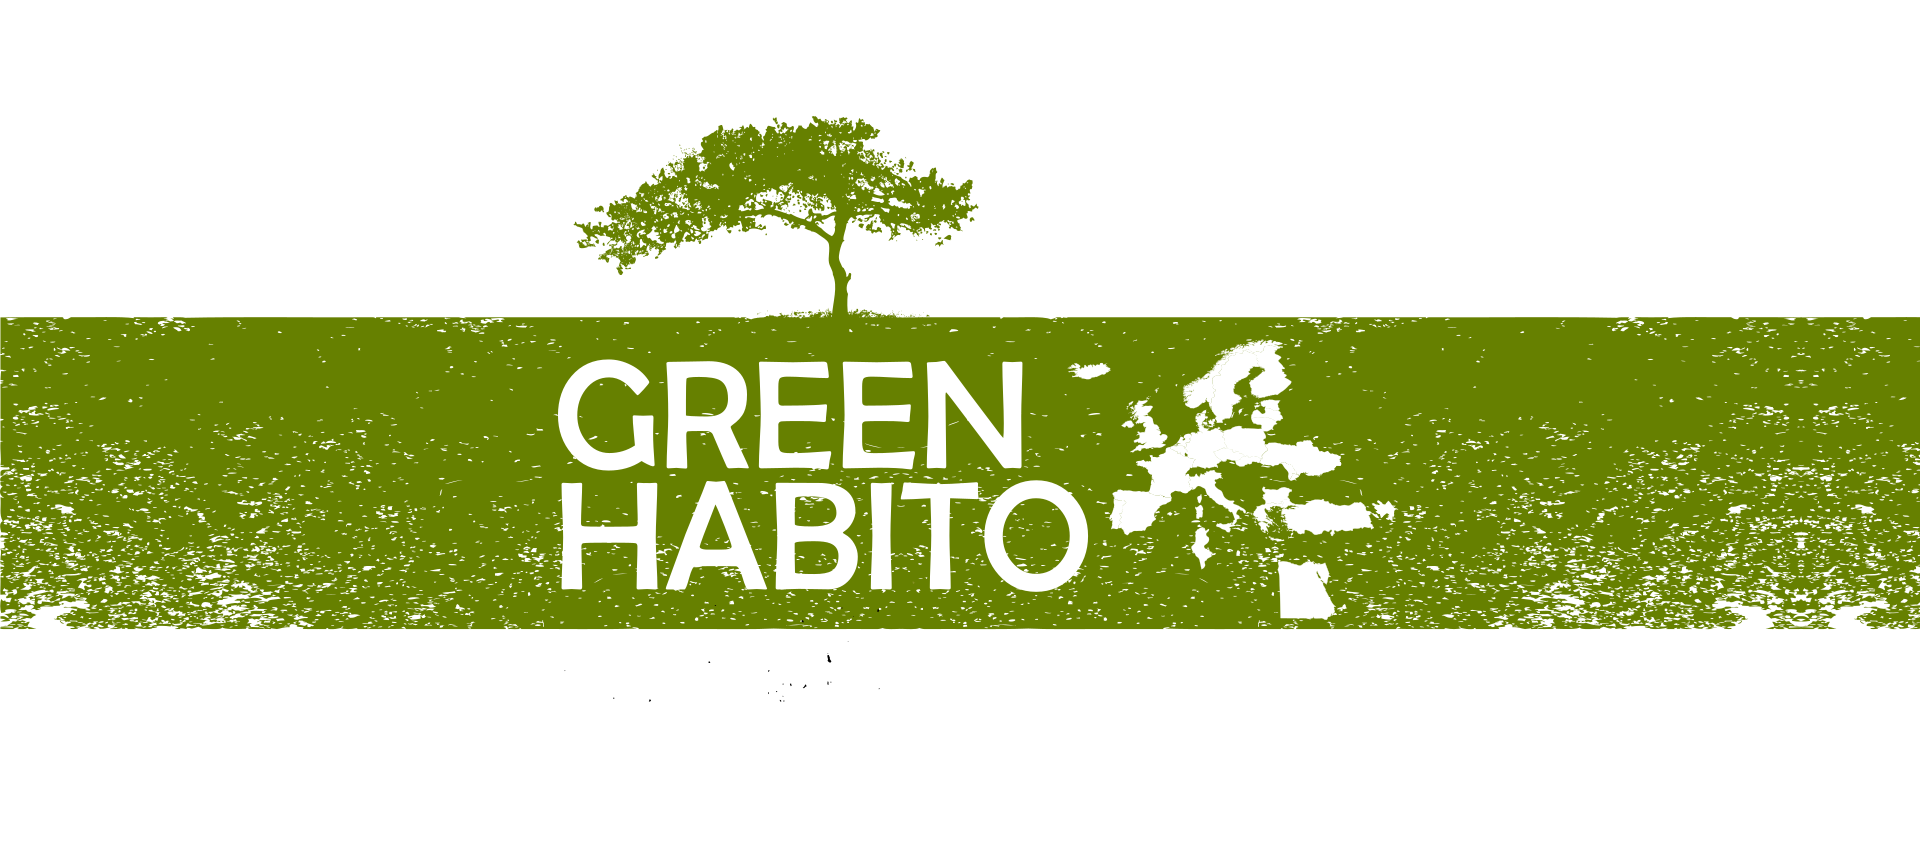 GREEN HABITO NETWORK